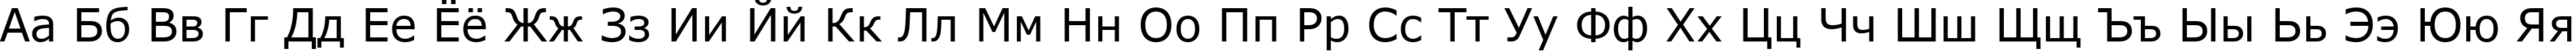 Пример написания русского алфавита шрифтом MS Reference Sans Serif